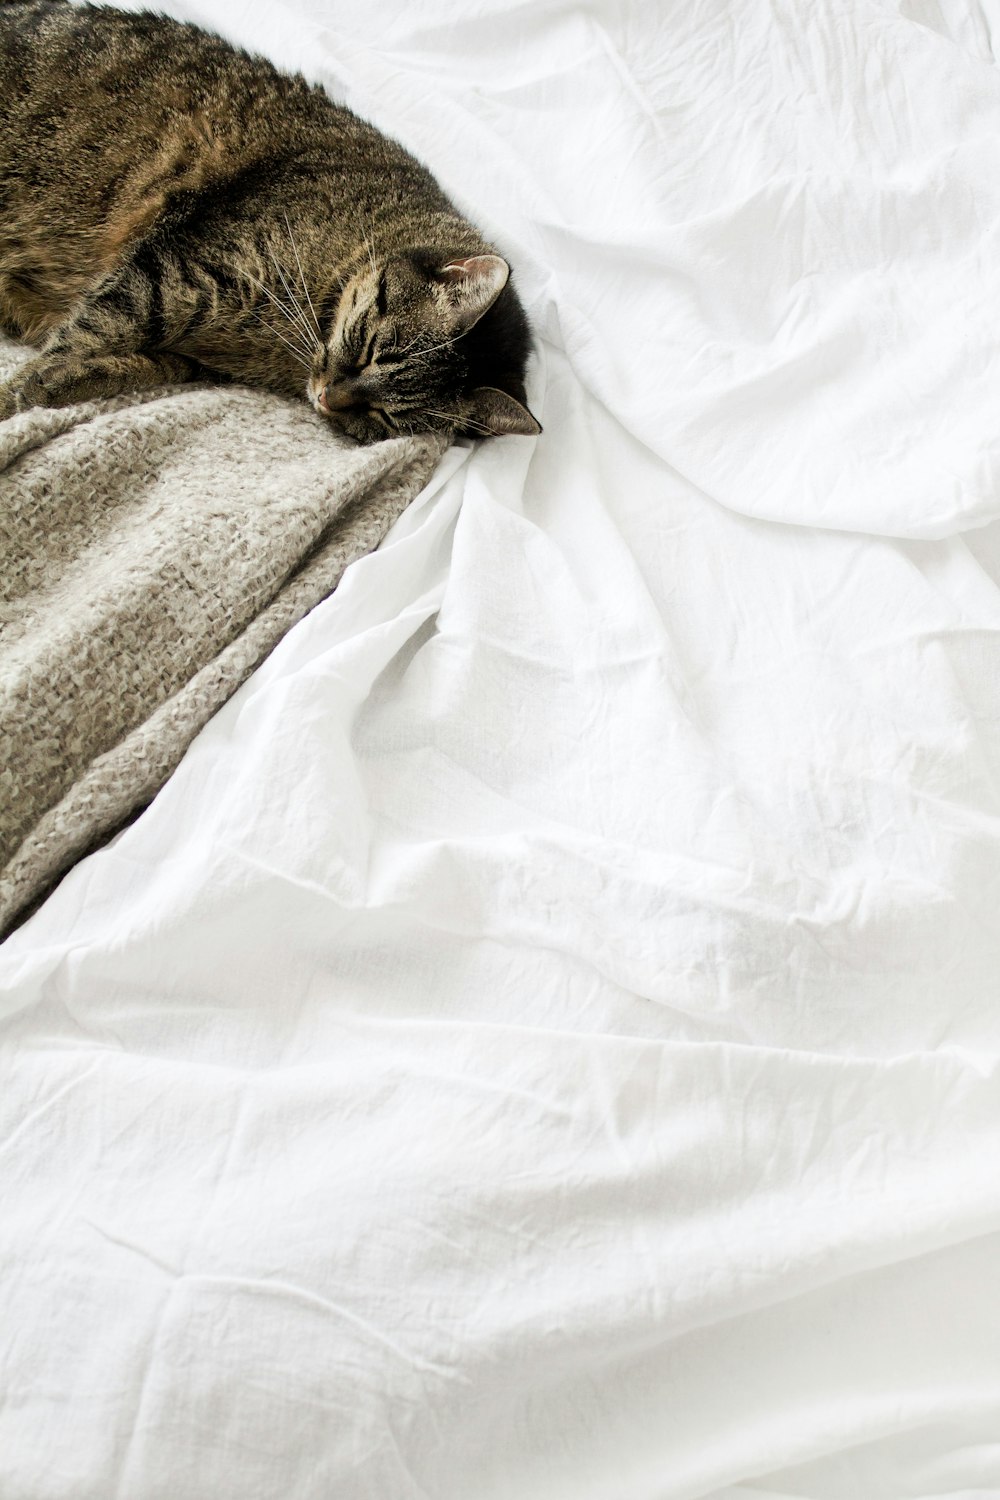 gato tabby marrom deitado no tecido branco